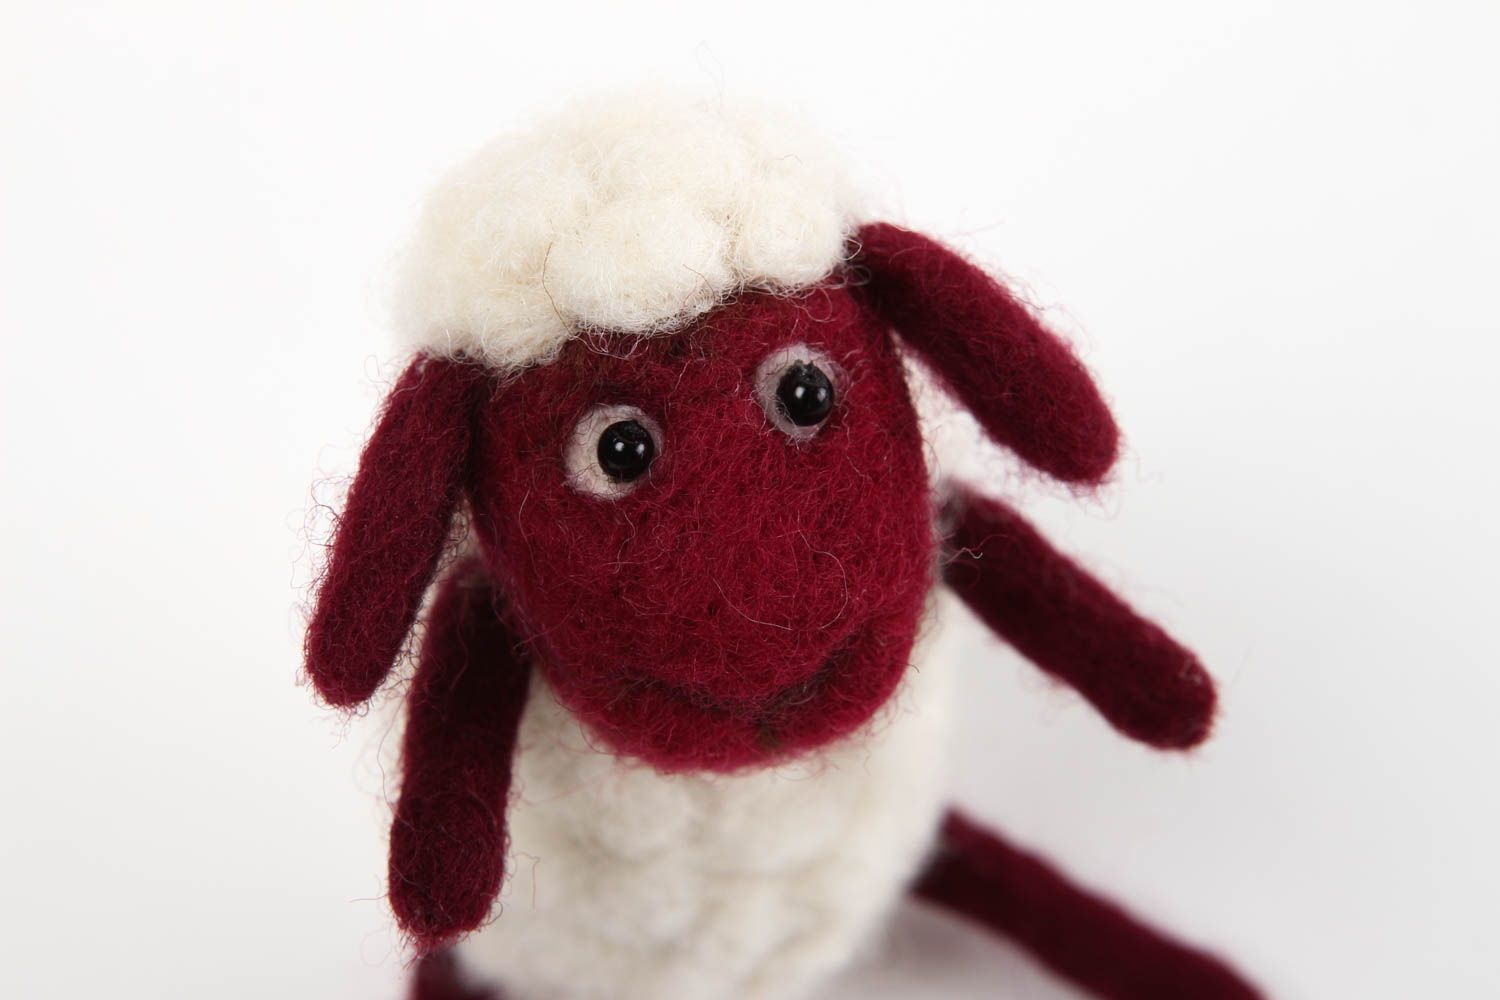  Игрушка ручной работы интерьерная игрушка милая овечка мягкая игрушка из шерсти фото 2